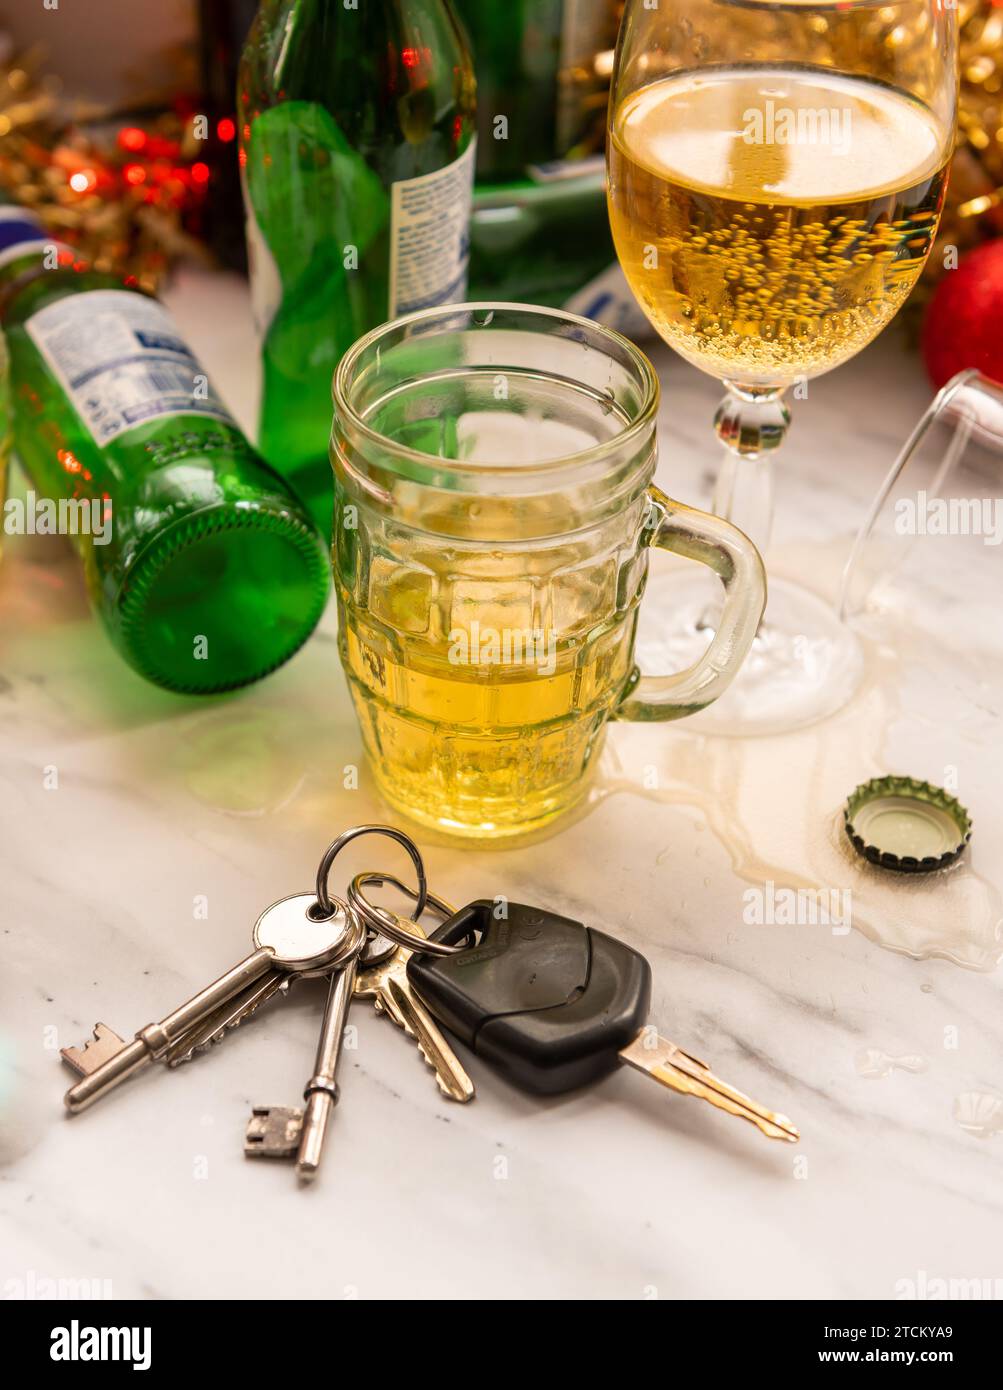 Ein weihnachtliches, festliches Getränkekonzept mit Autoschlüsseln auf einem Tisch voller alkoholischer Getränke und Dekorationen. Stockfoto